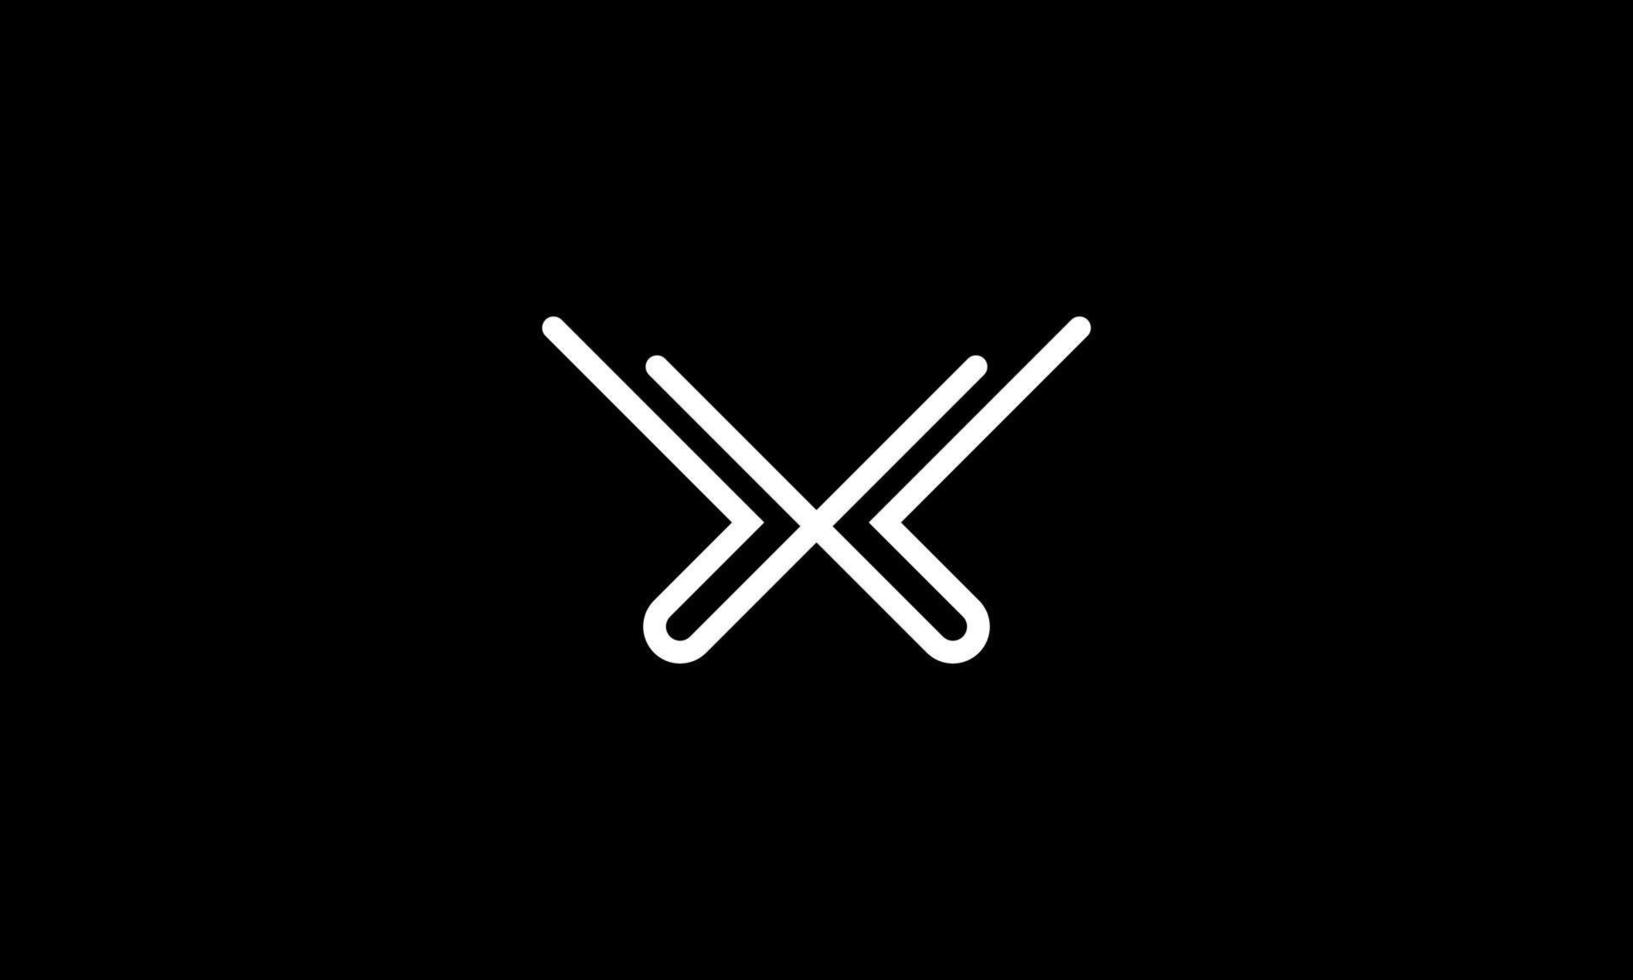 buchstabe x logo design kostenlose vektordatei vektor